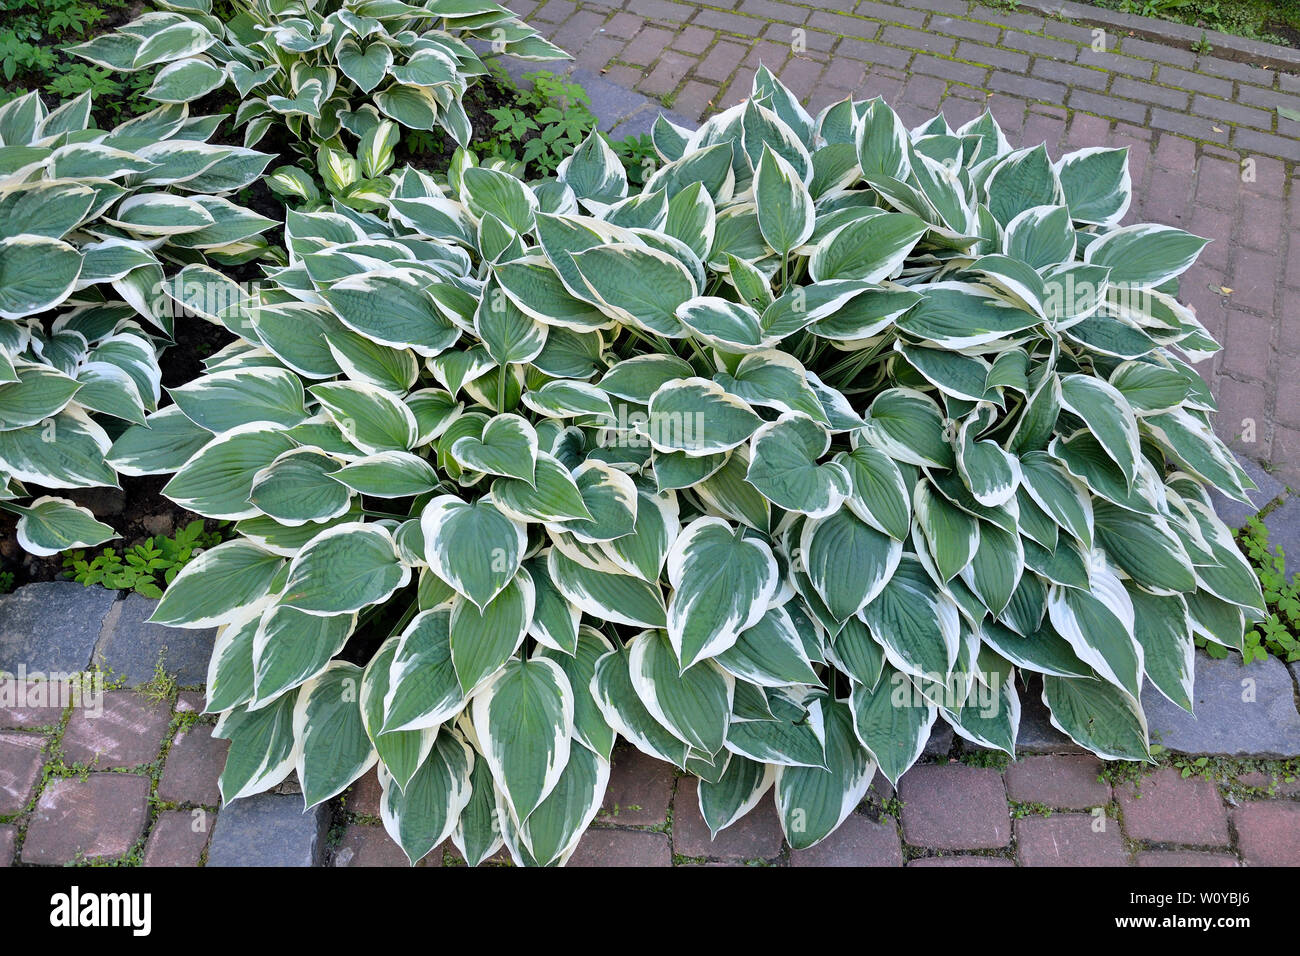 Dekorative pflanzen Hosta Patriot (Populärste) mit vielfältigen Grün mit weißen Blättern für die Landschaftsgestaltung Design im Park oder Garten. Stockfoto